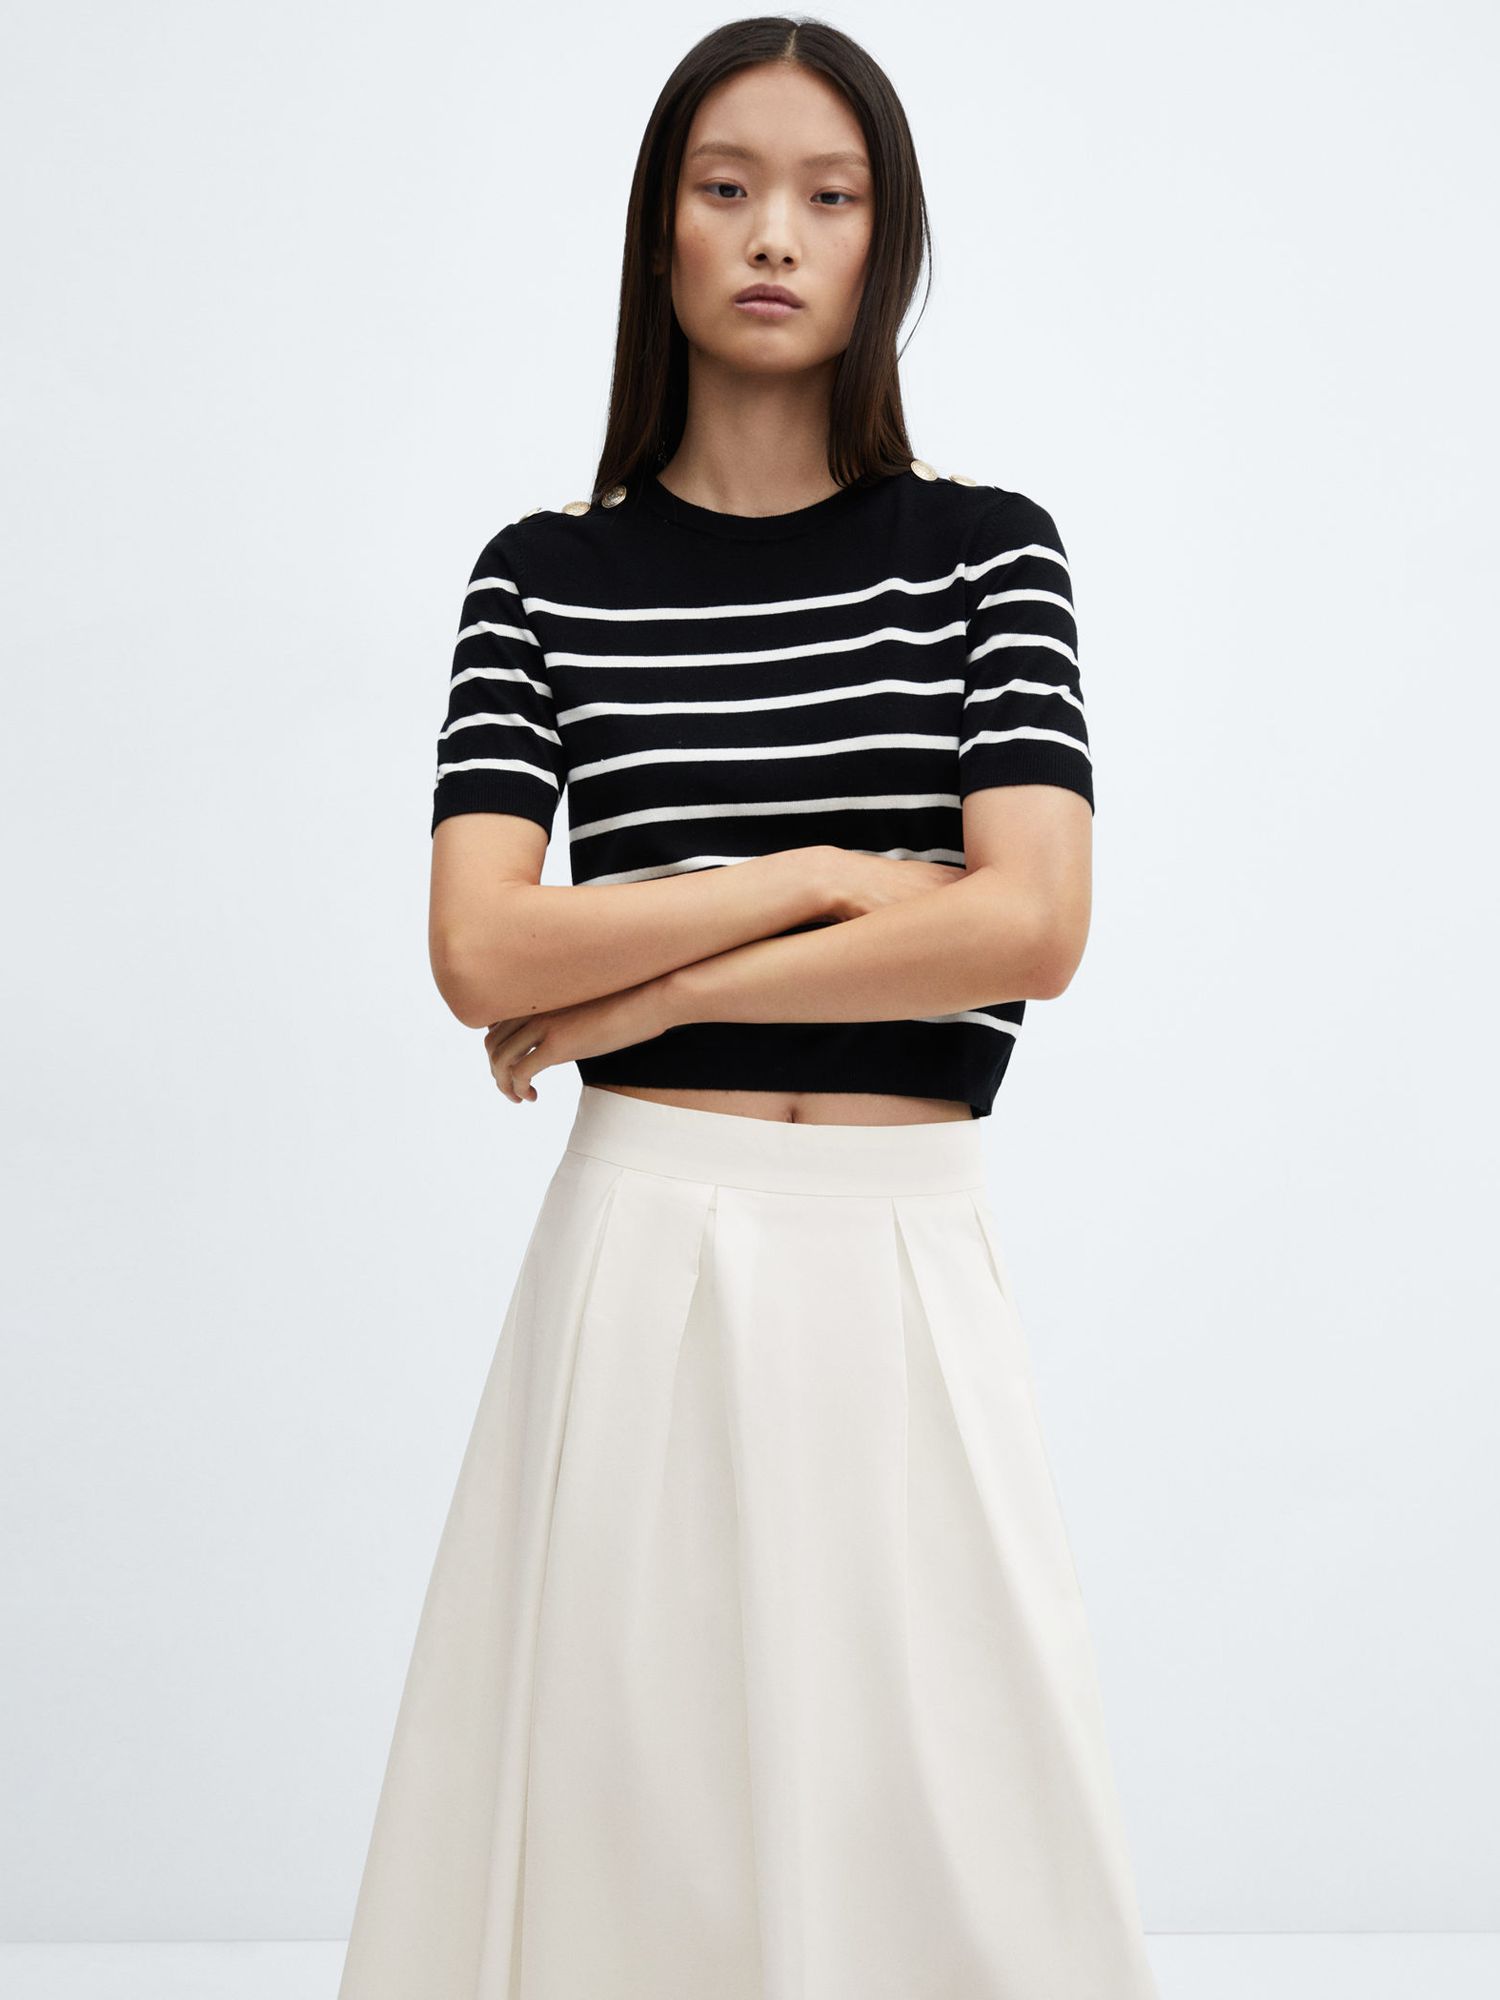 Mango Irena Cotton Midi Skirt, White at John Lewis & Partners